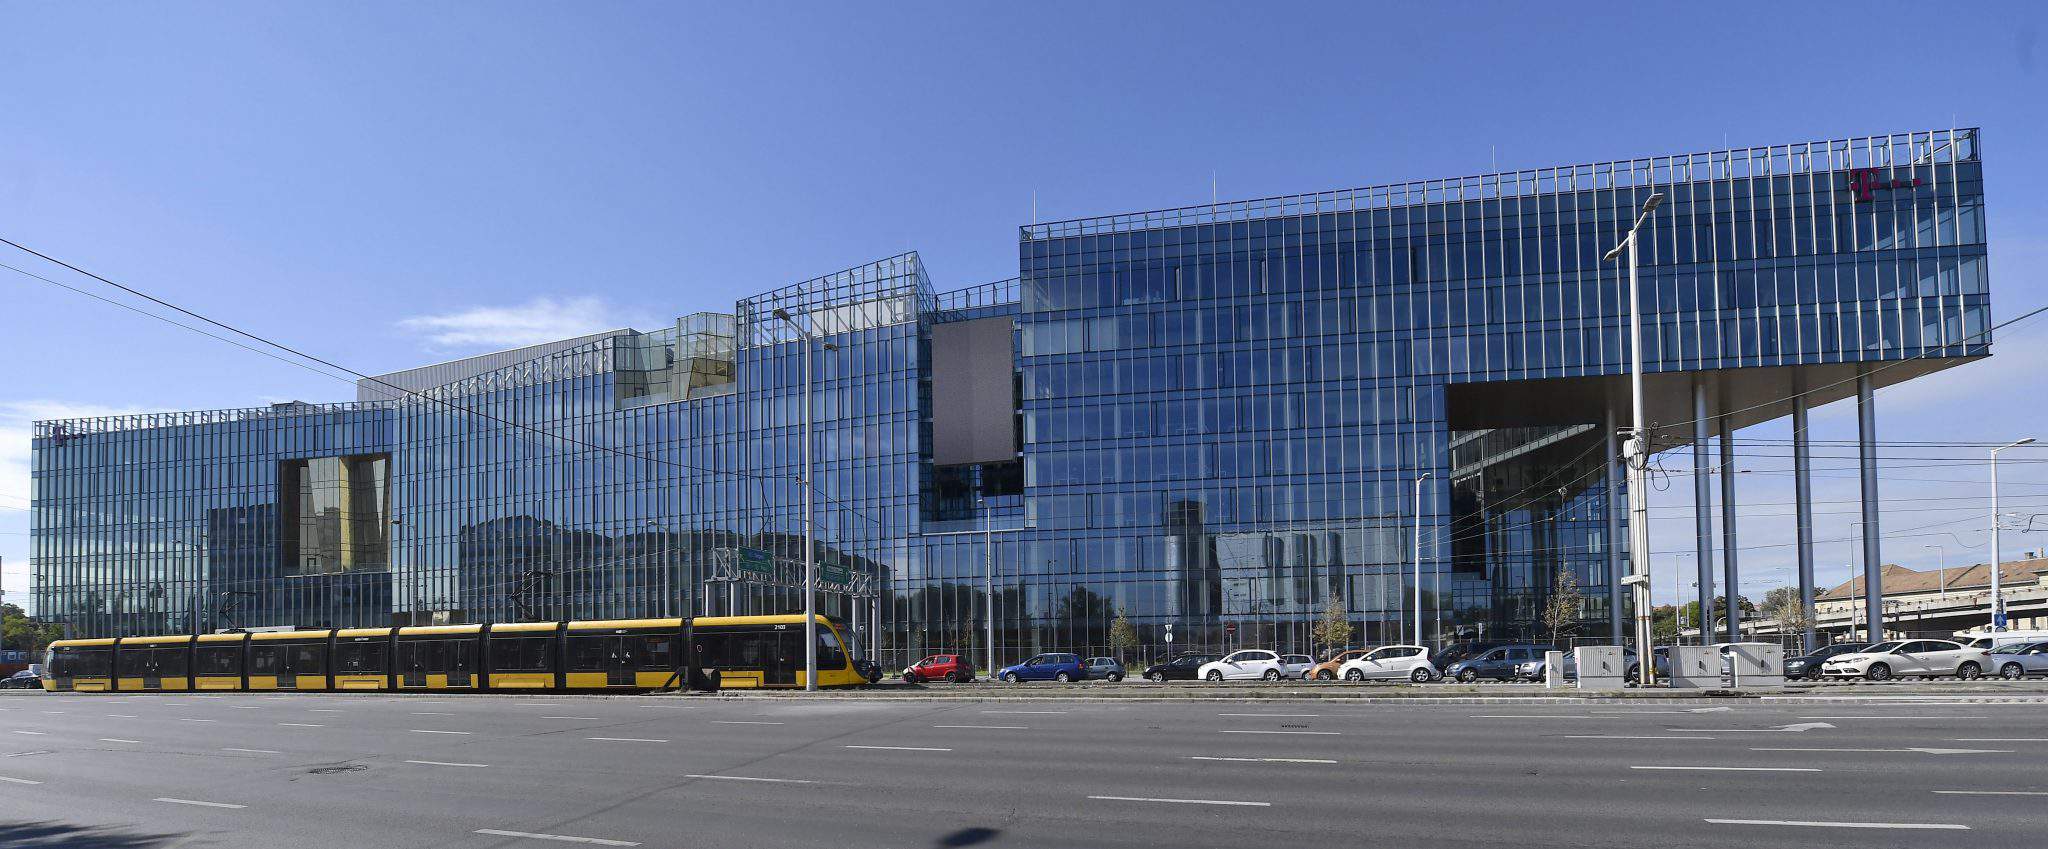 Wing a annoncé l'achèvement du siège de 50 milliards de forints (154.5 millions d'euros) de Magyar Telekom et T-Systems